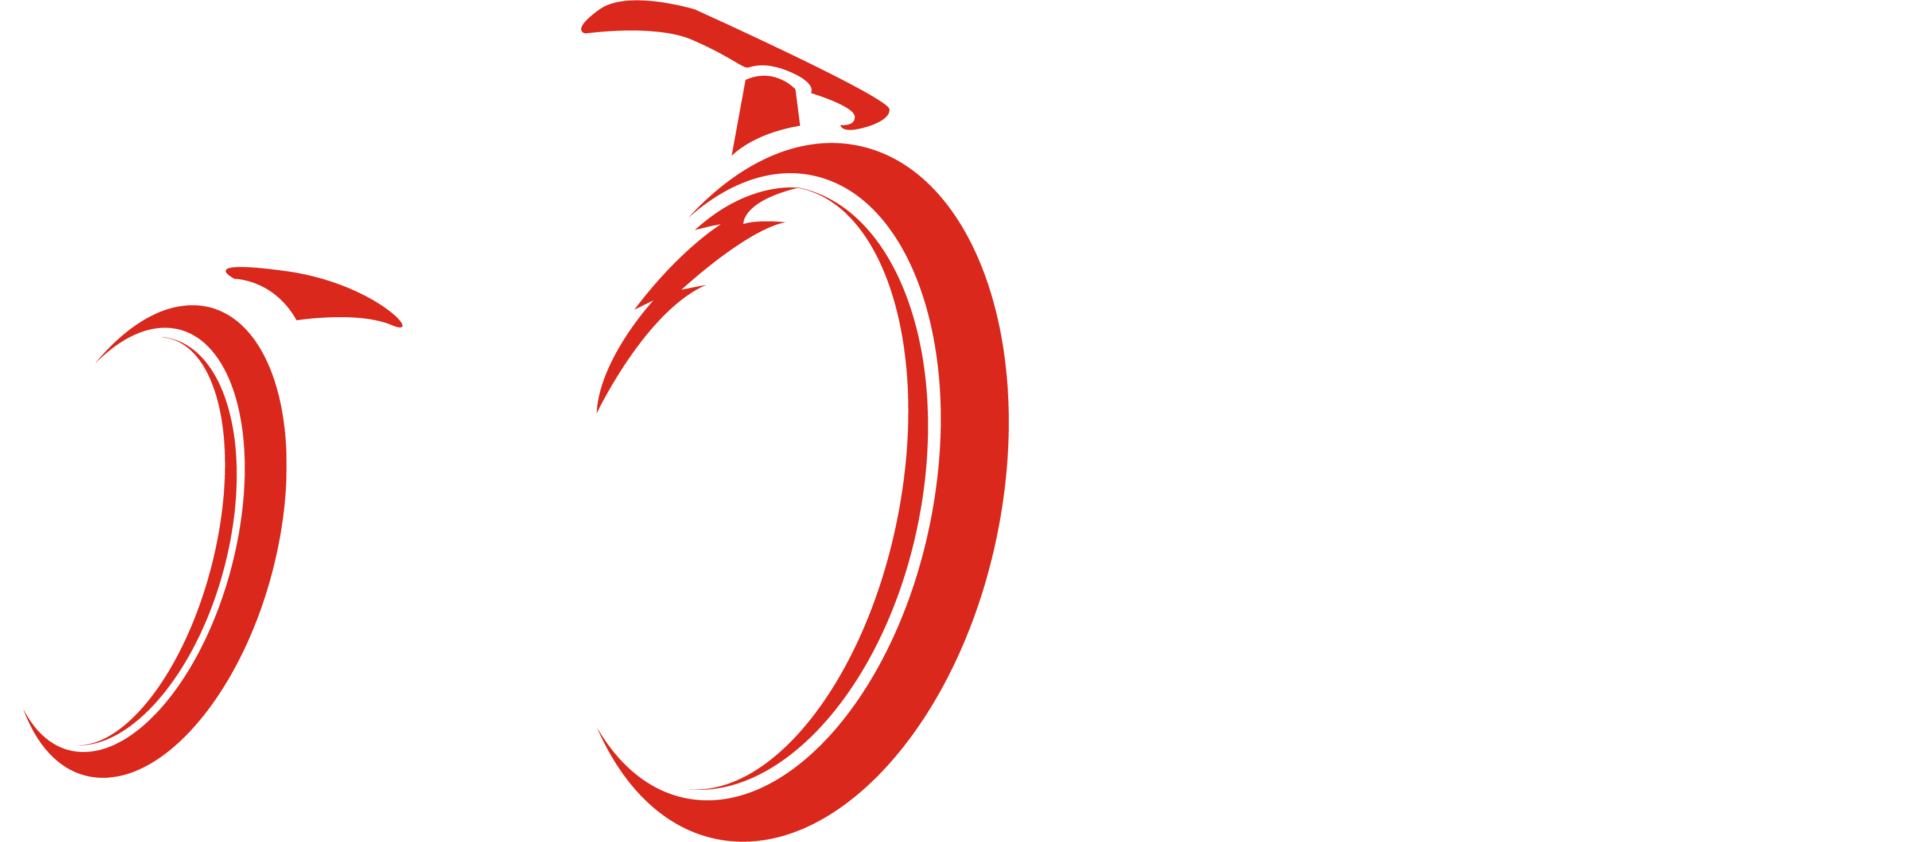 Velo49 Logo